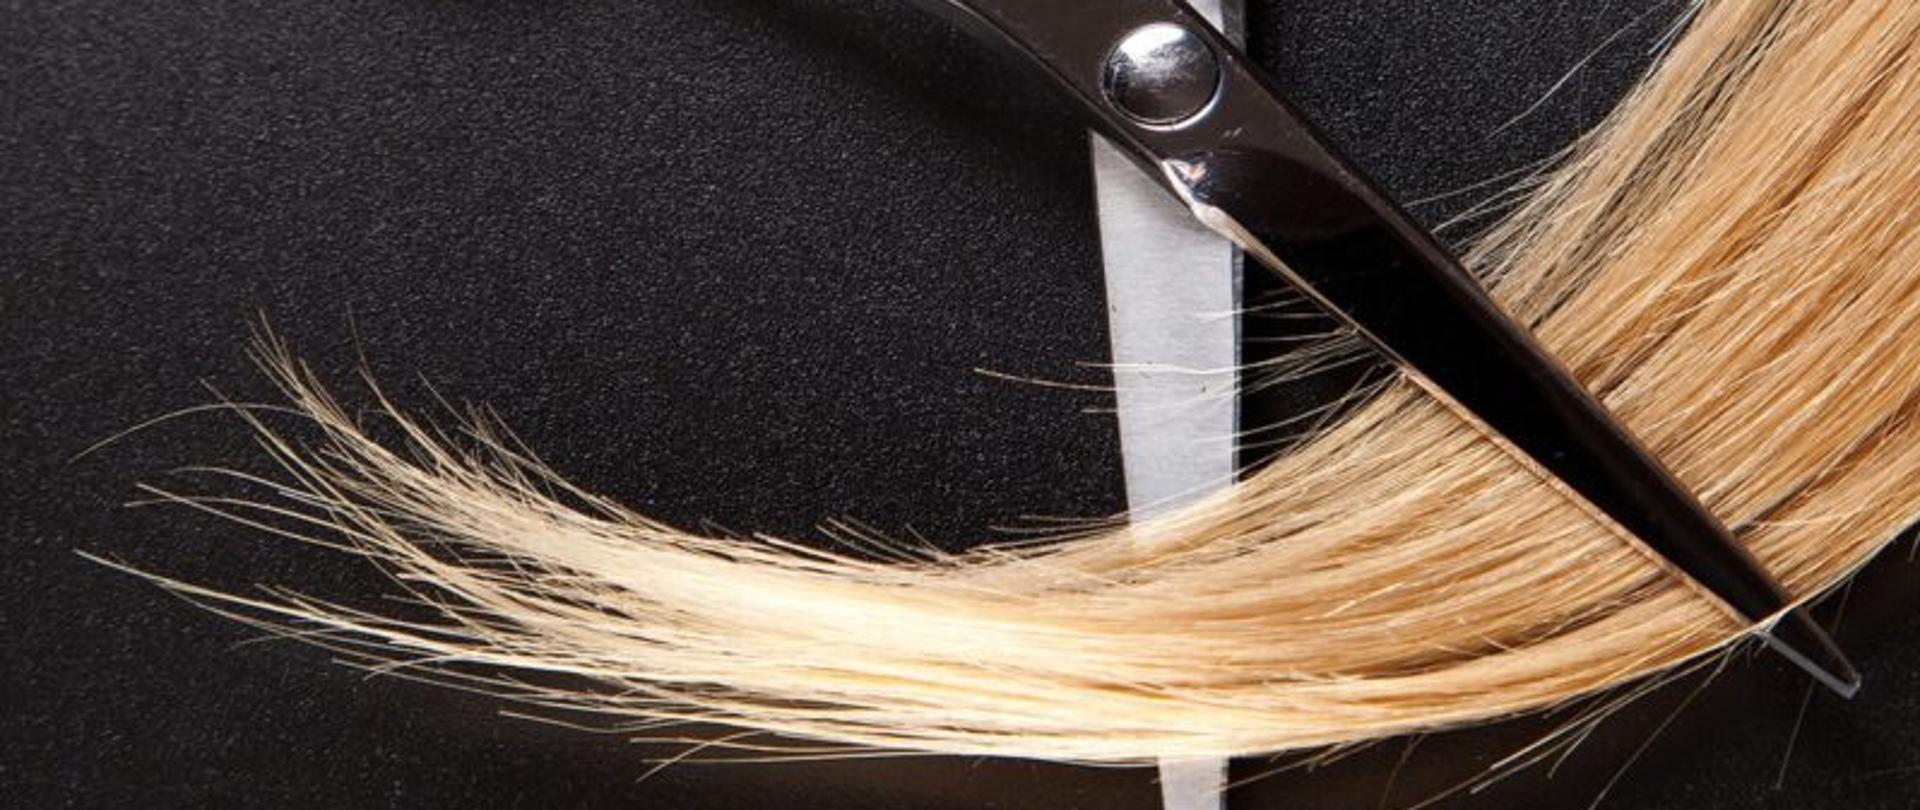 Zdjęcie przedstawia nożyczki wraz z włosami.